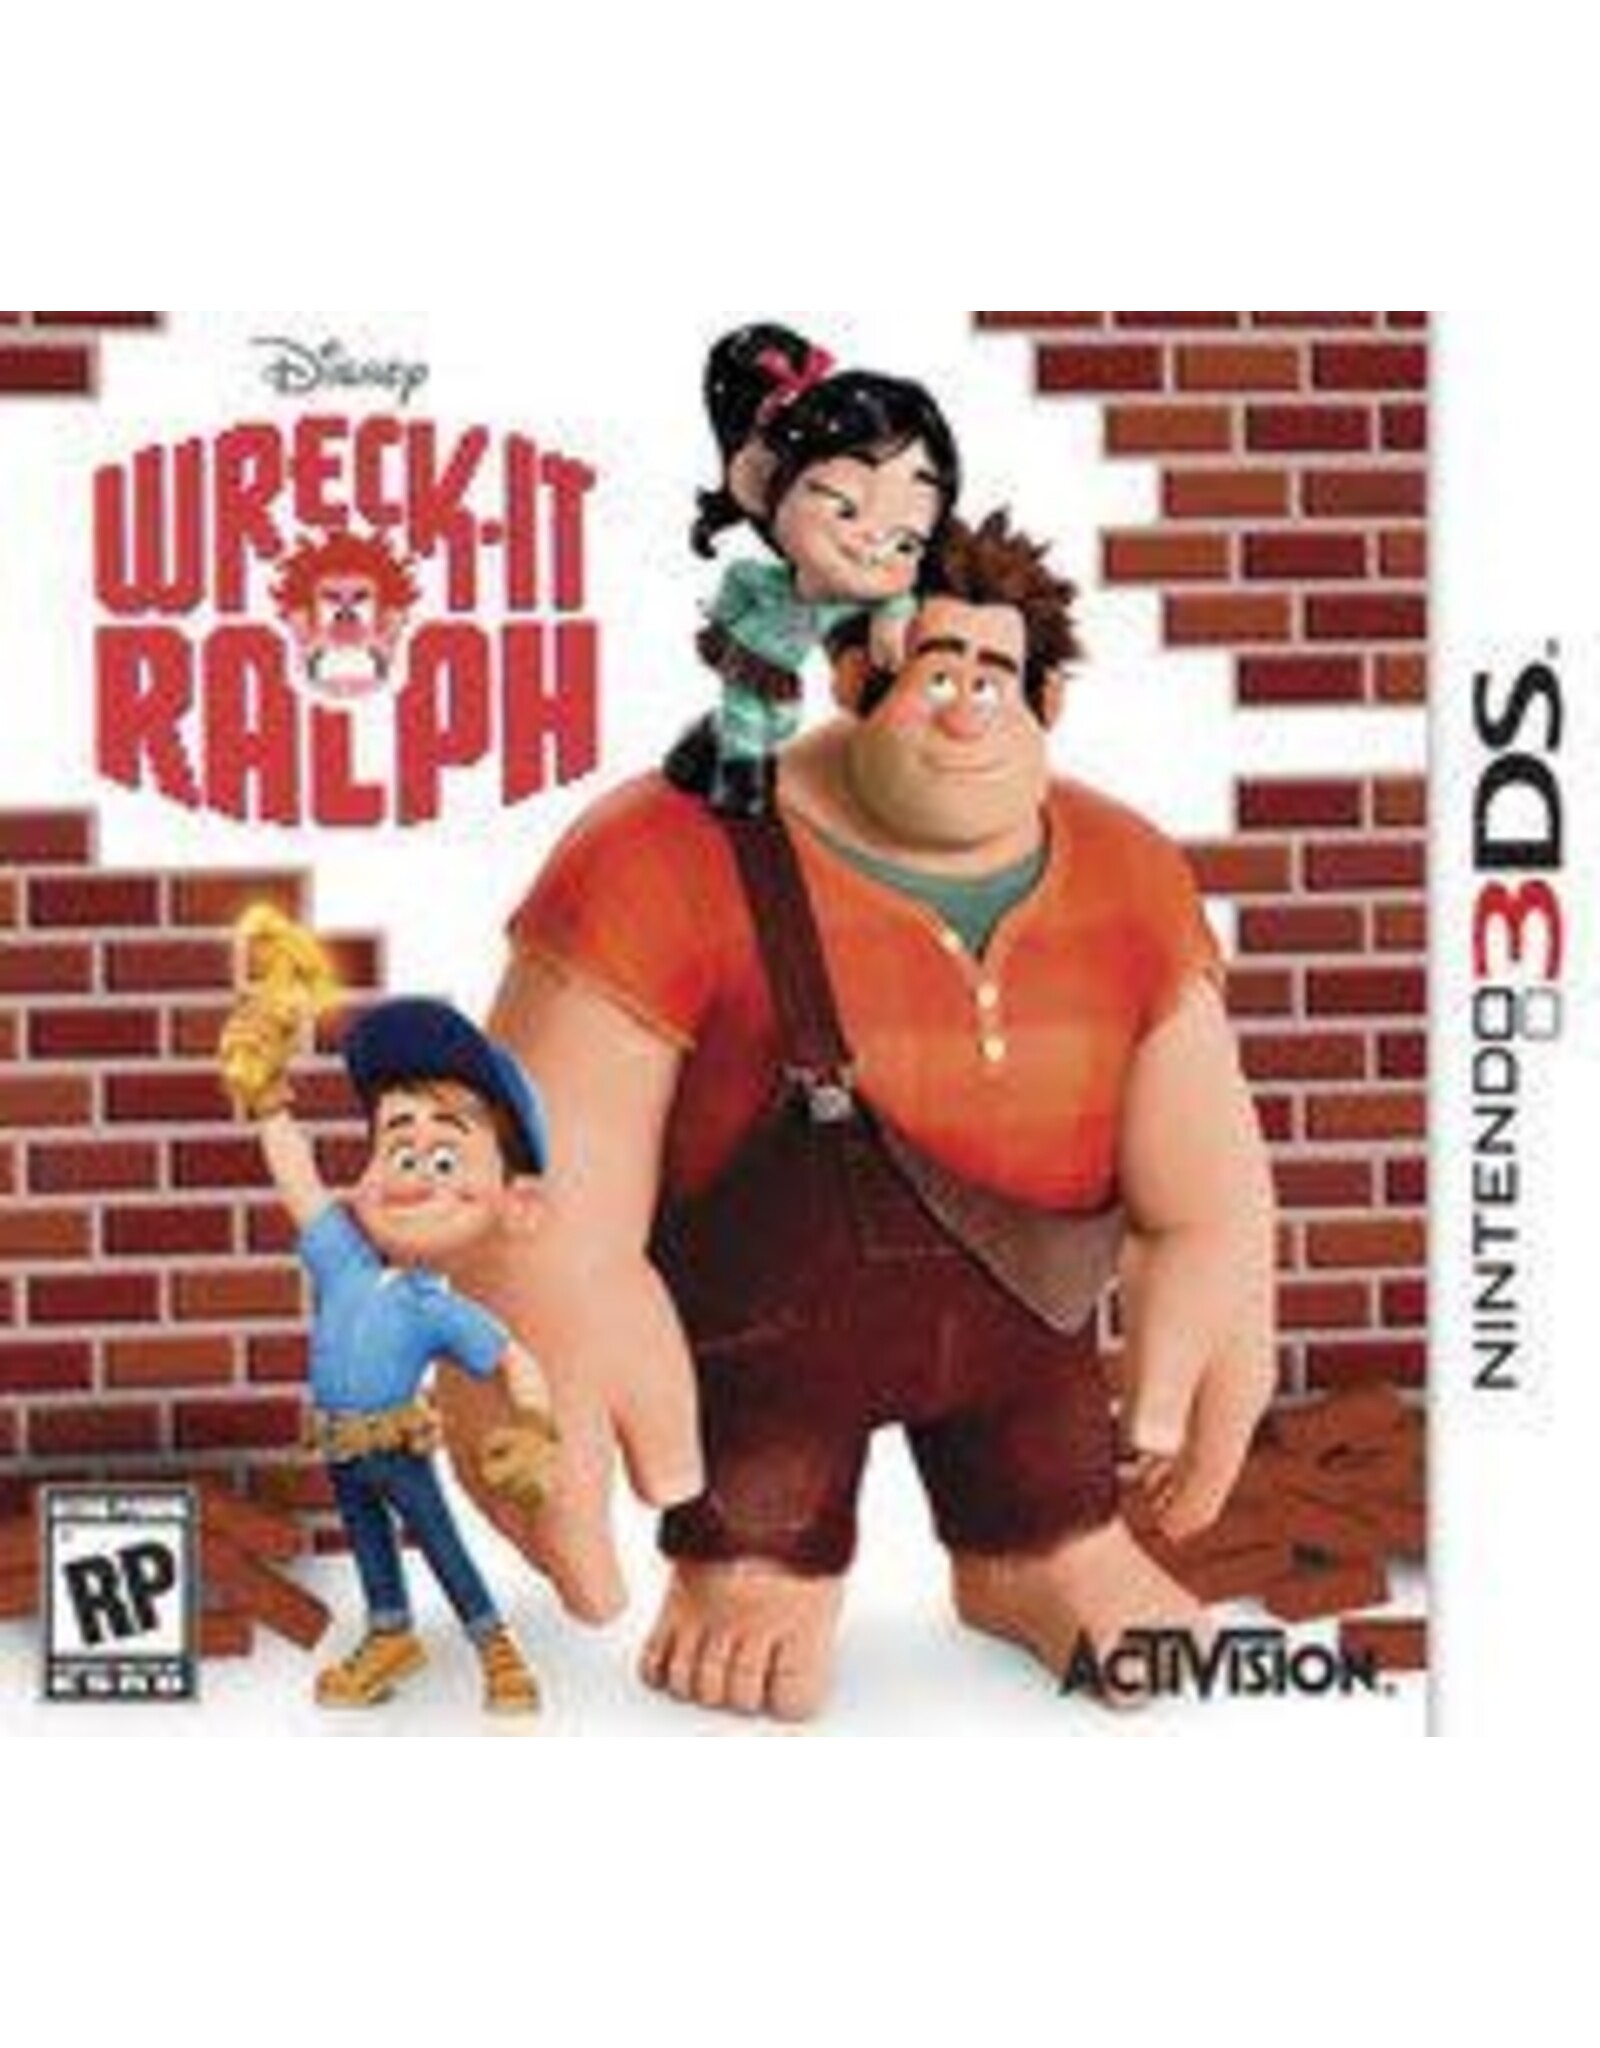 Nintendo 3DS Wreck It Ralph (Cart Only)